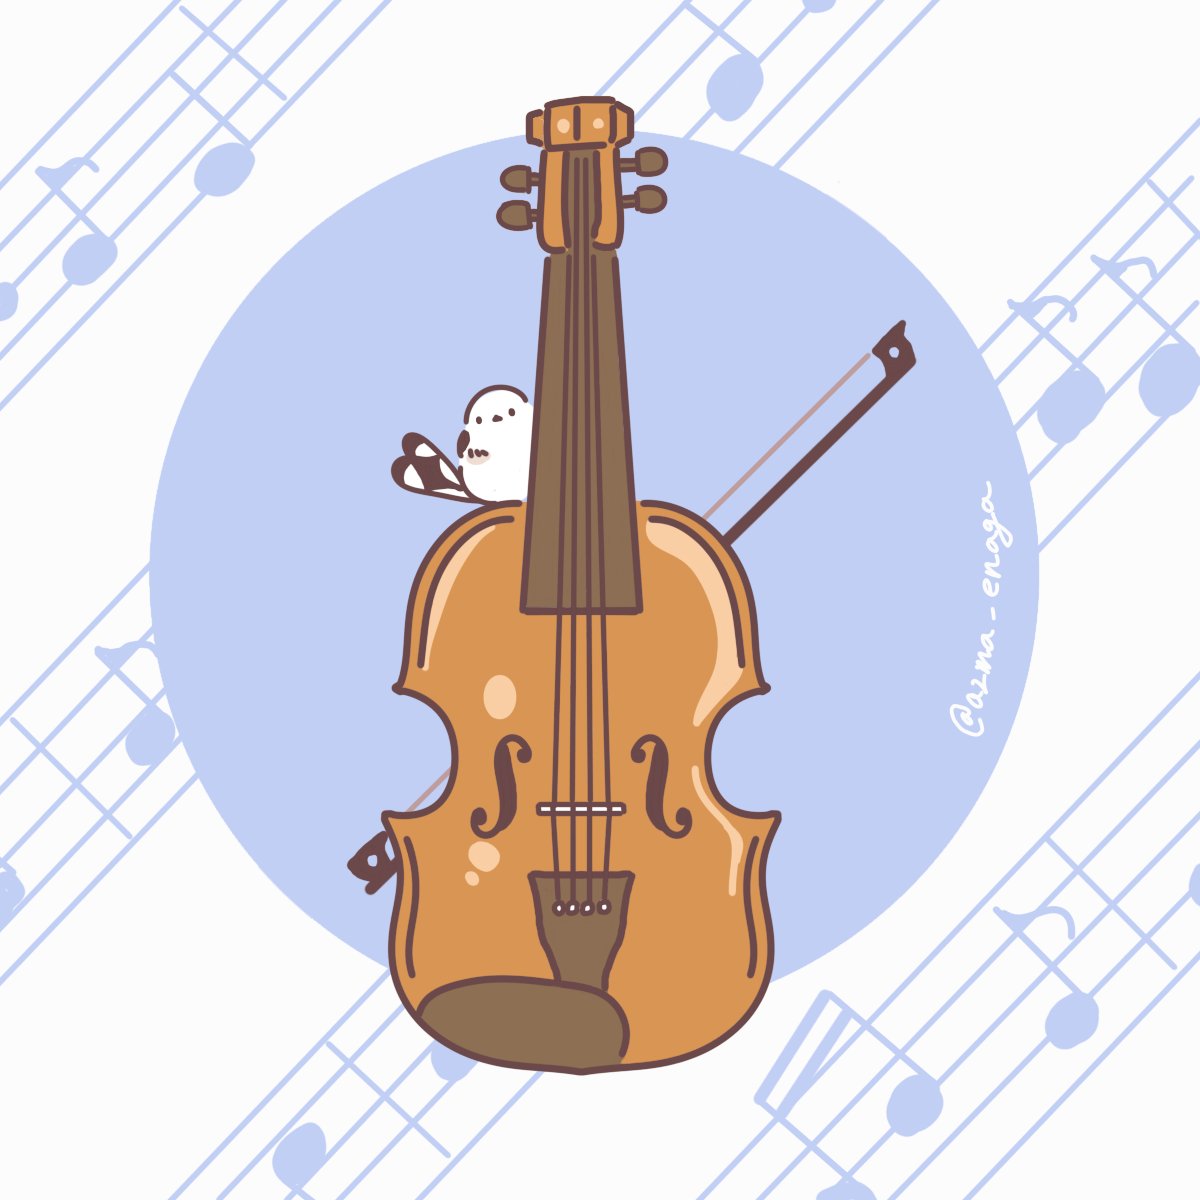 イオリ お題箱から楽器シリーズを バイオリン ユーフォニアム コントラバス ファ 吾妻まいか デザフェスc 212のイラスト